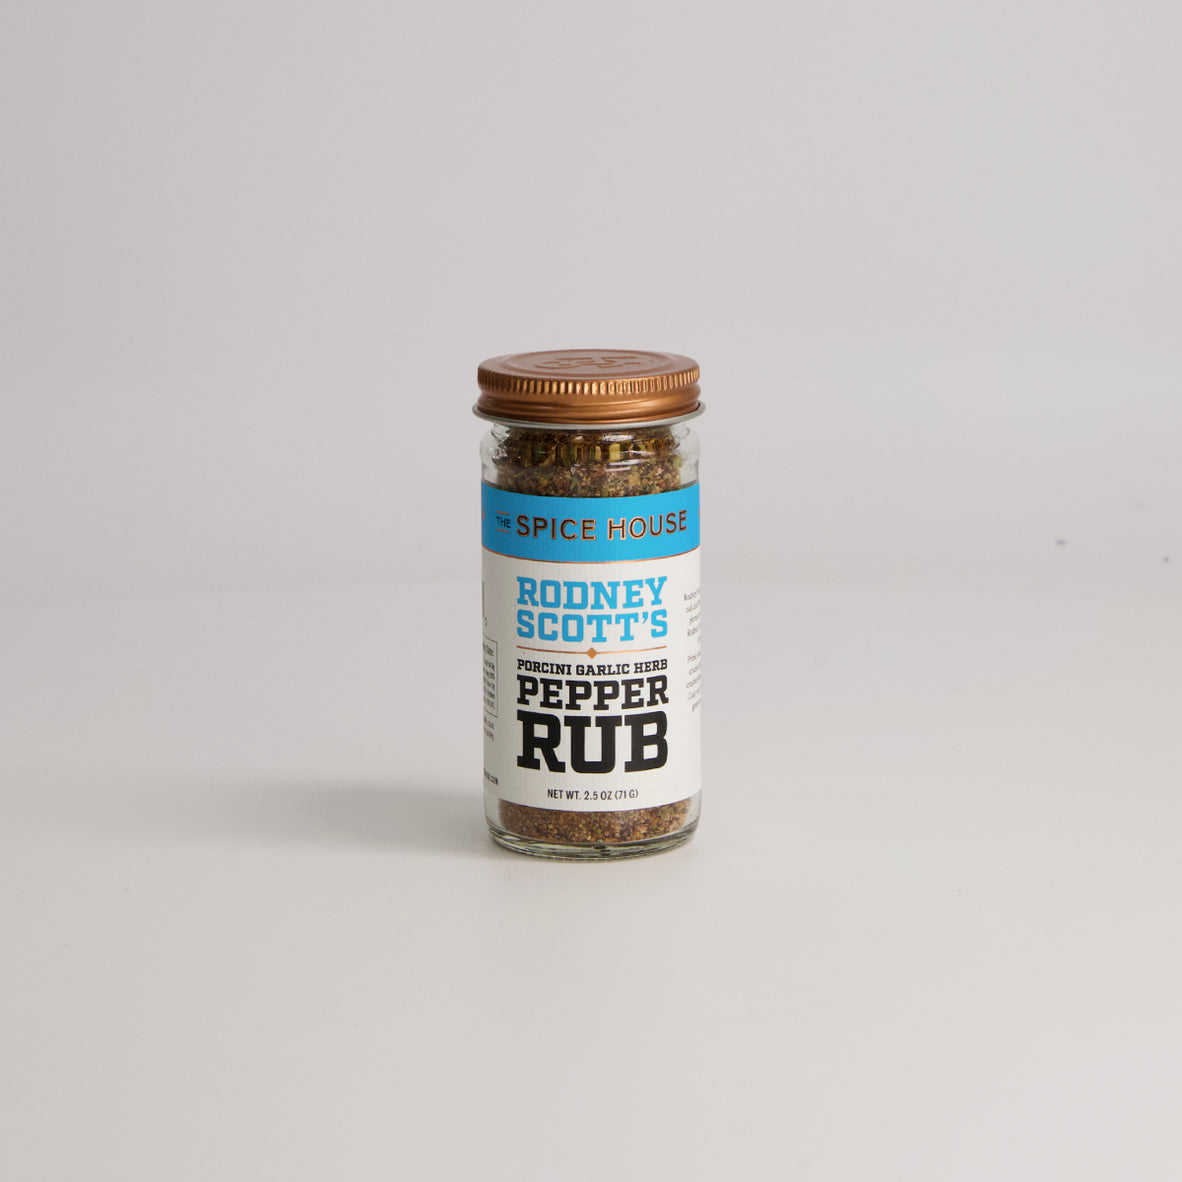 Rodney Scott - Porcini Garlic Herb Pepper Rub